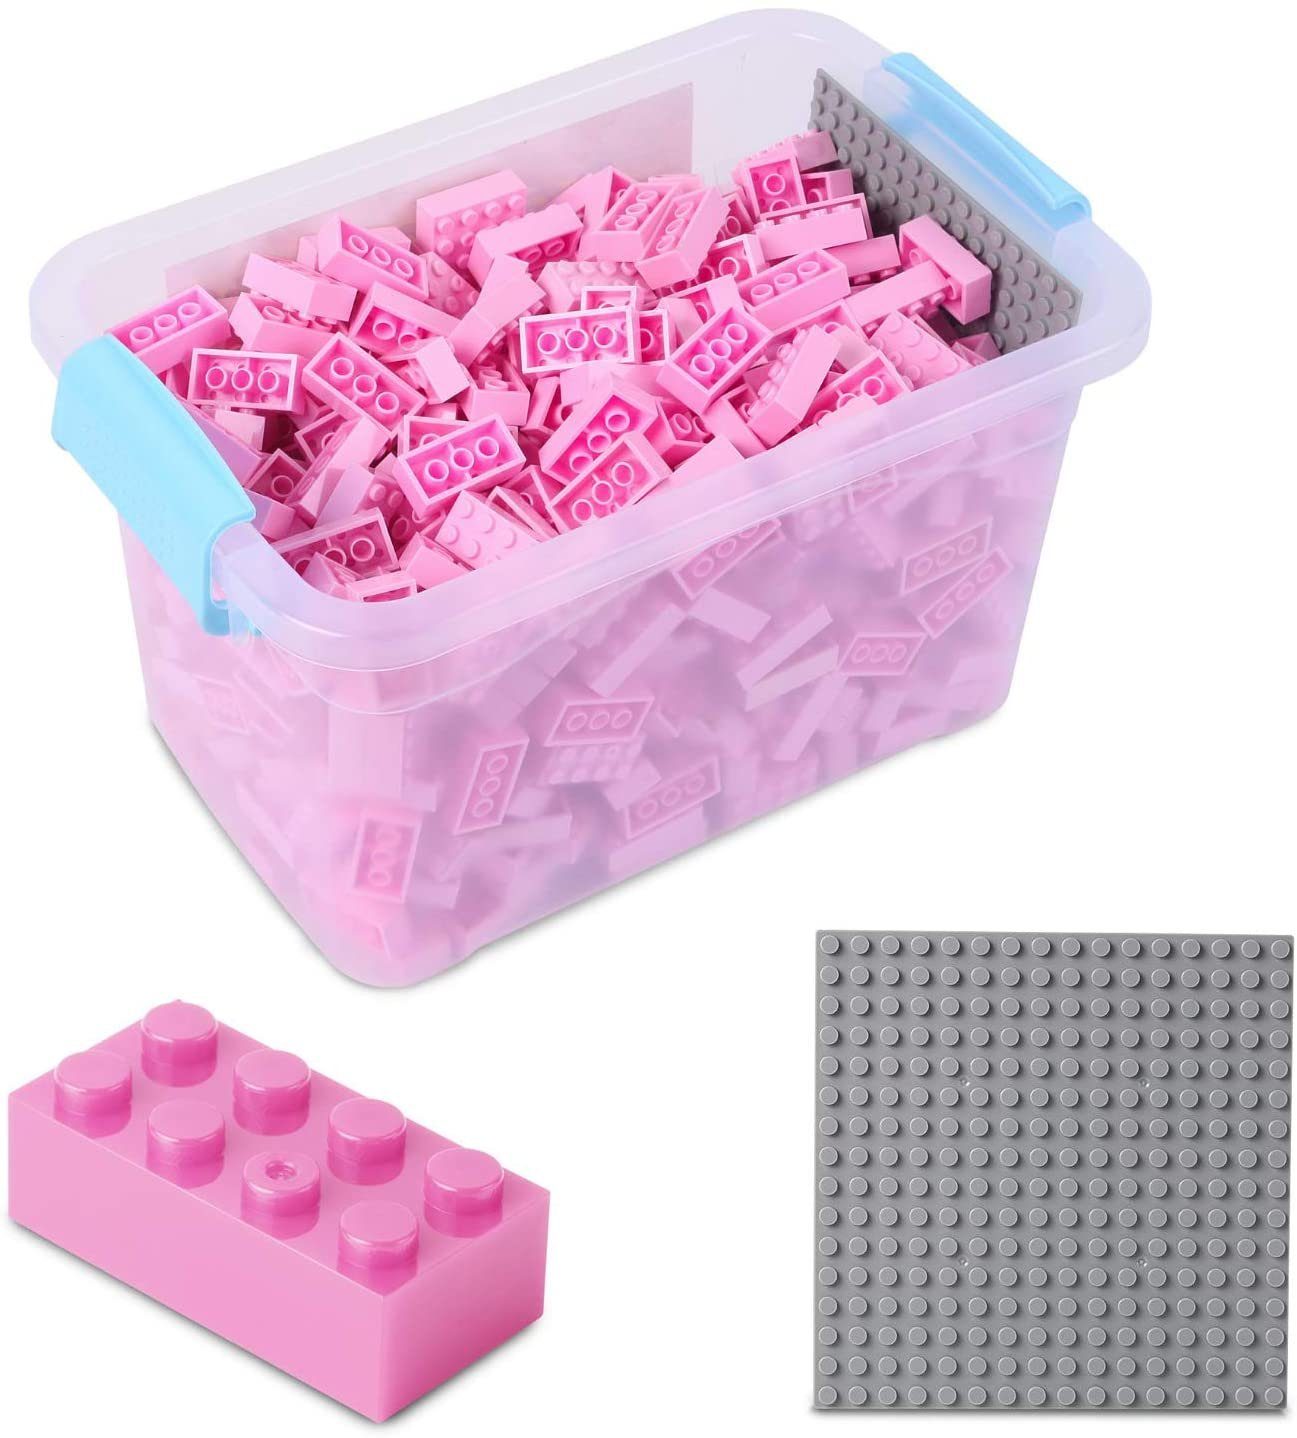 Katara Konstruktionsspielsteine Bausteine Box-Set mit 520 Steinen + Platte + Box, (3er Set), Kompatibel zu allen Anderen Herstellern - verschiedene Farben pink